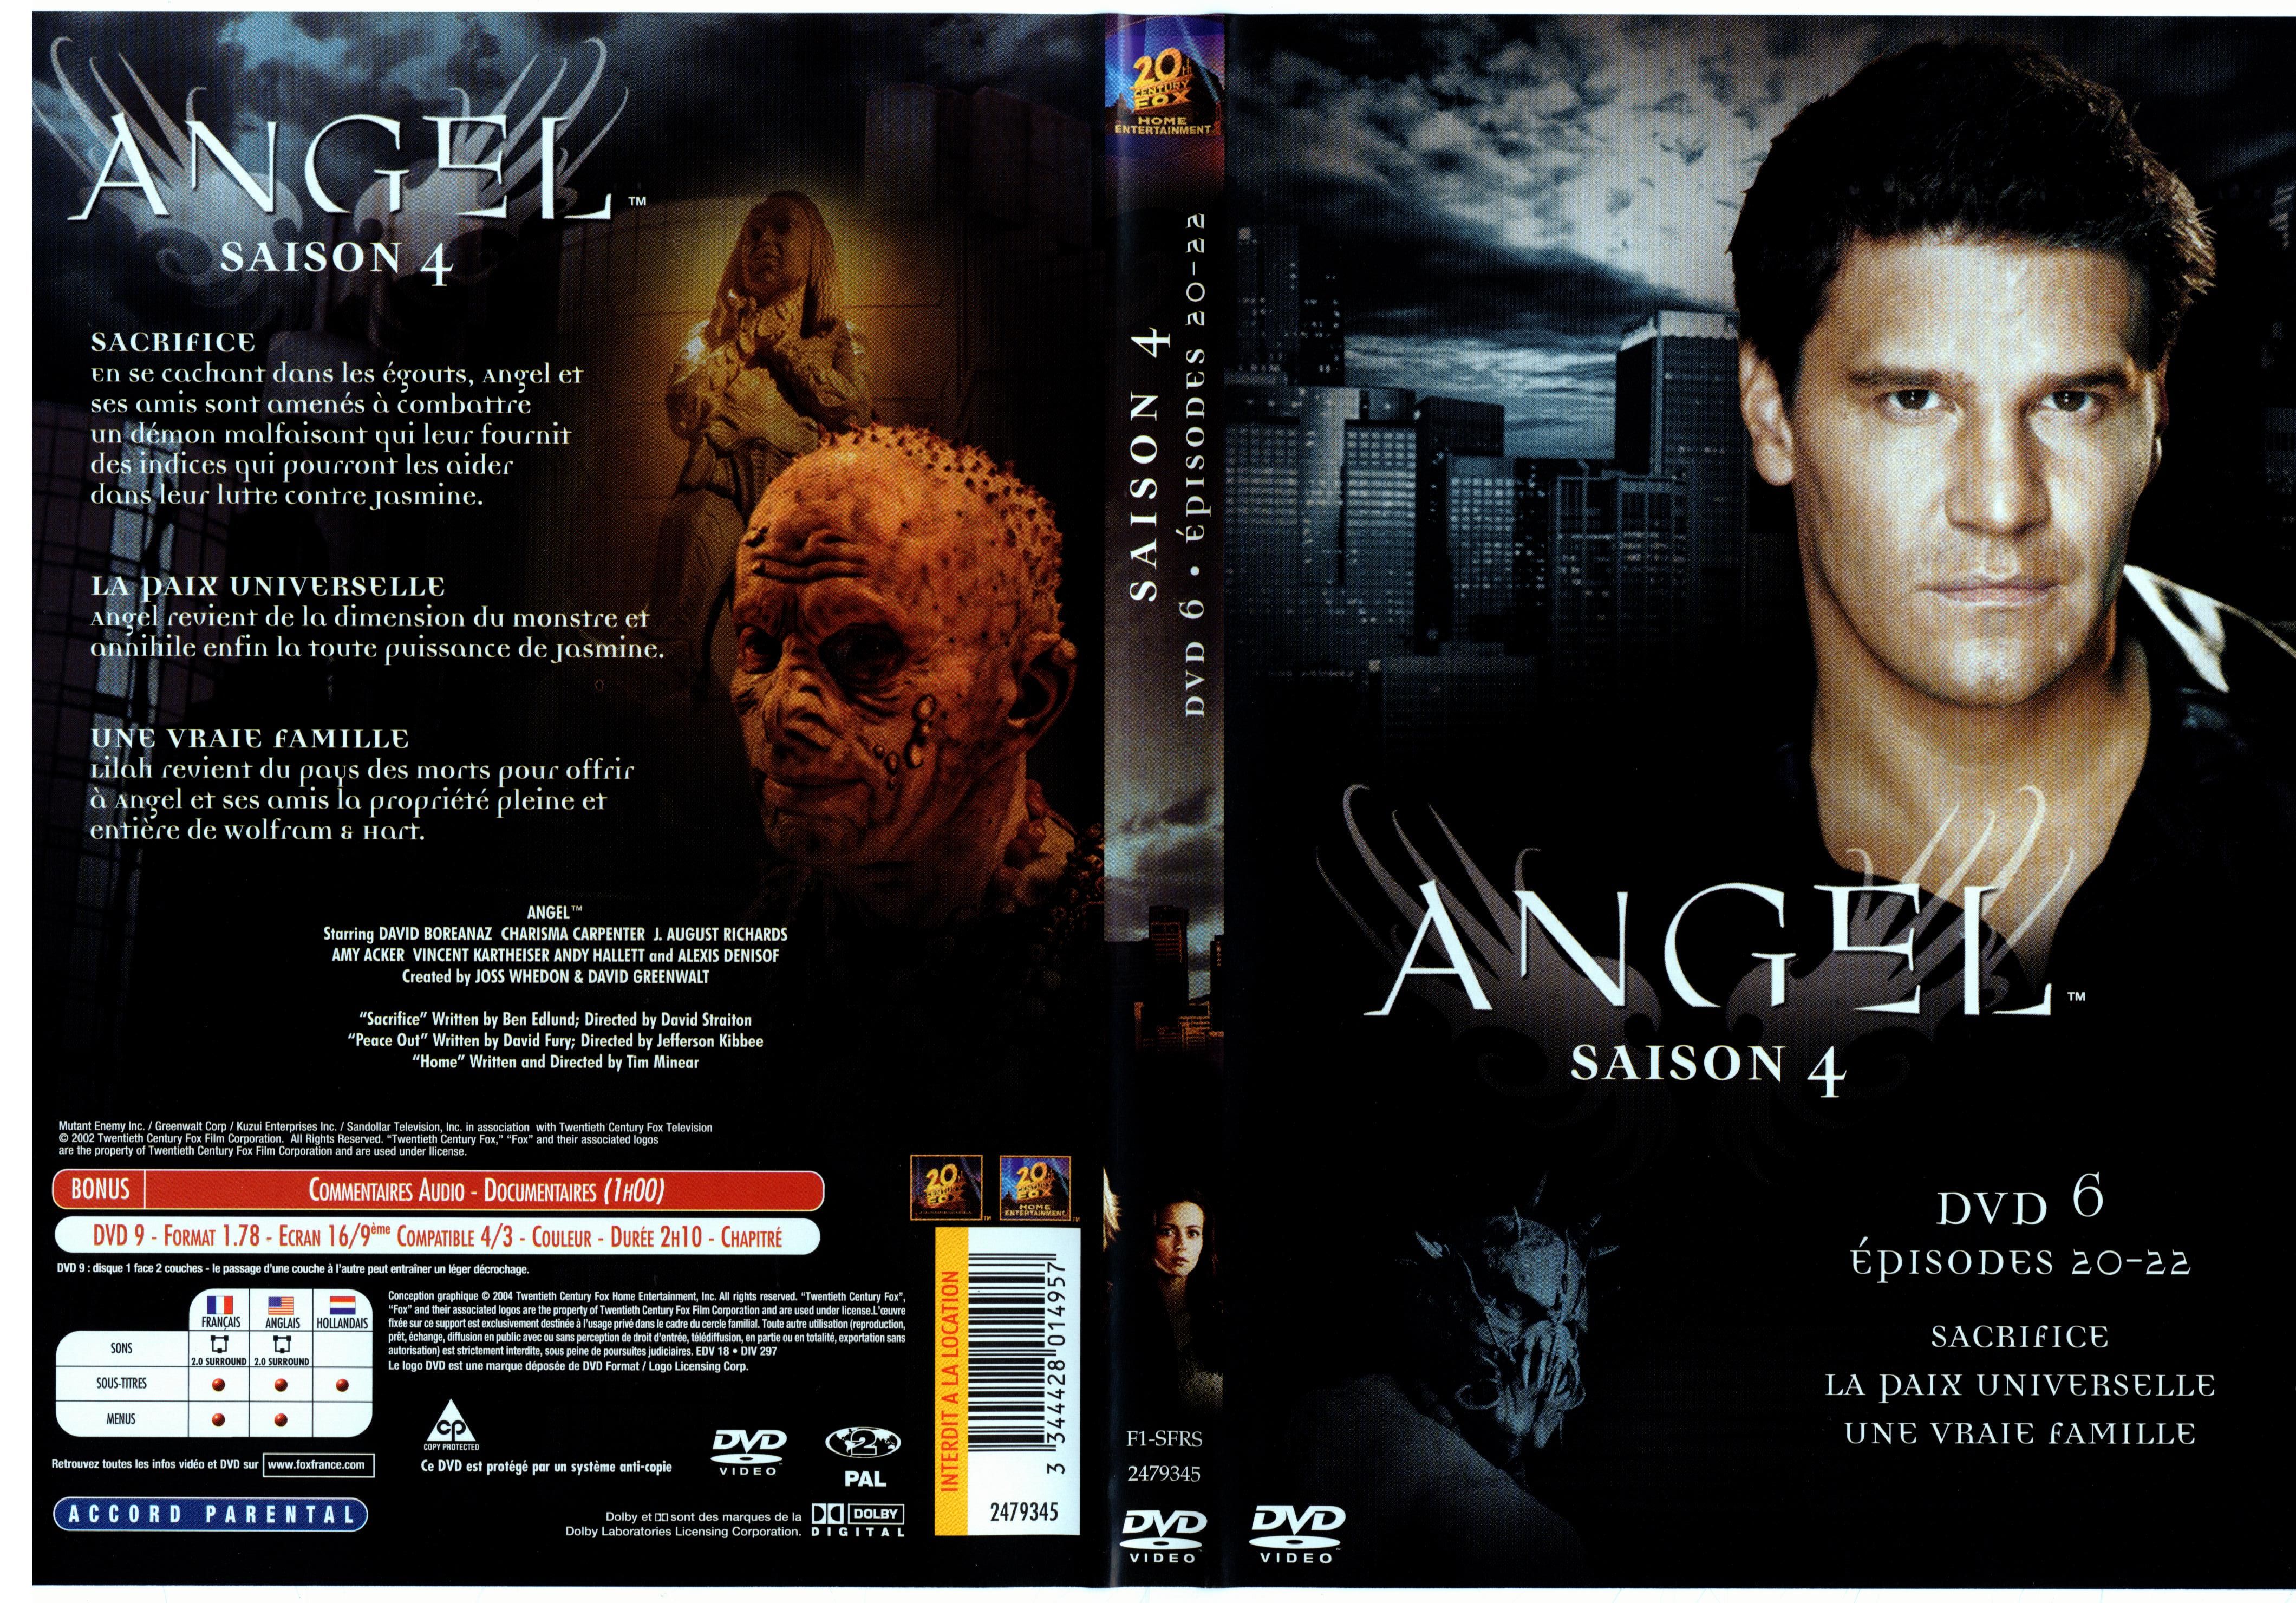 Jaquette DVD Angel Saison 4 dvd 6